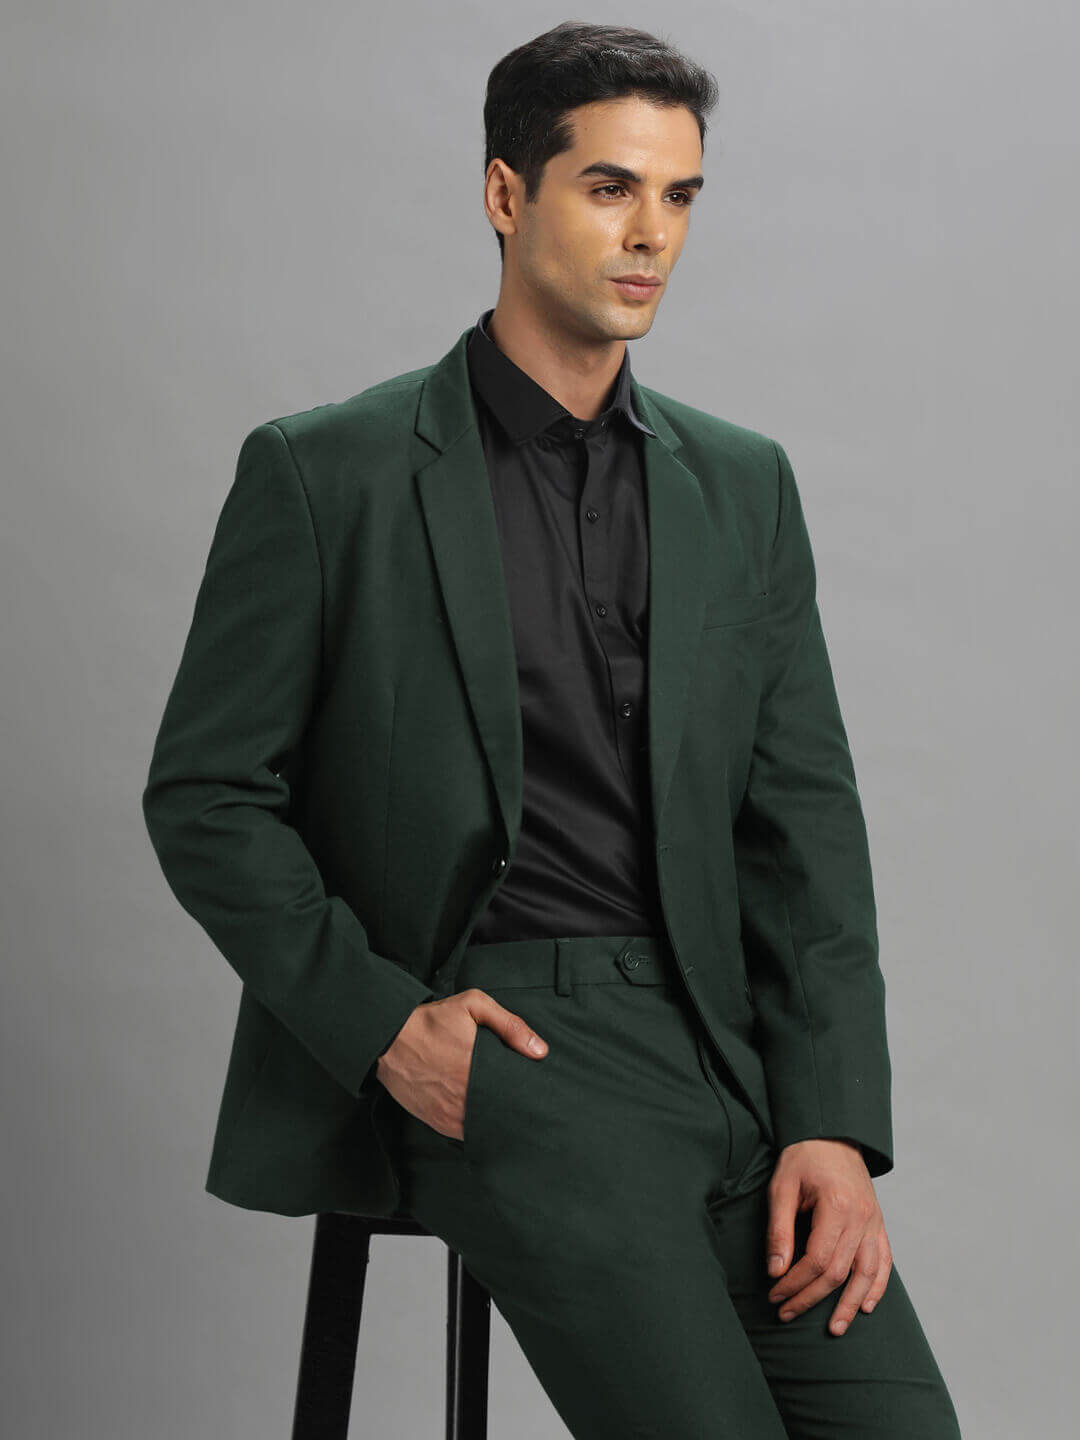 Women's Dark Green Suit | Suits for Work, Weddings & More